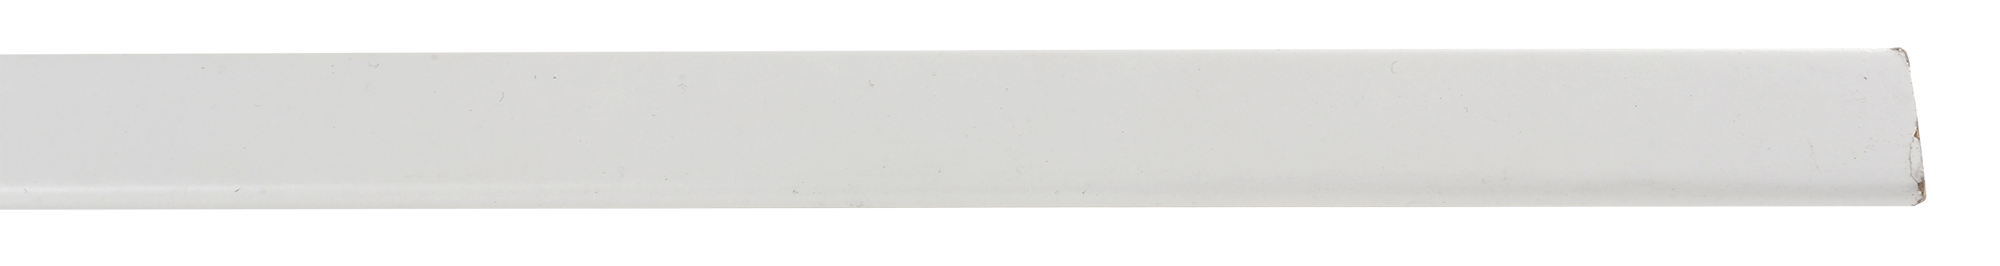 Guardavivo de mdf mel blanca adhesivo 30x30 mm x 2,43 m (ancho x grueso x largo)